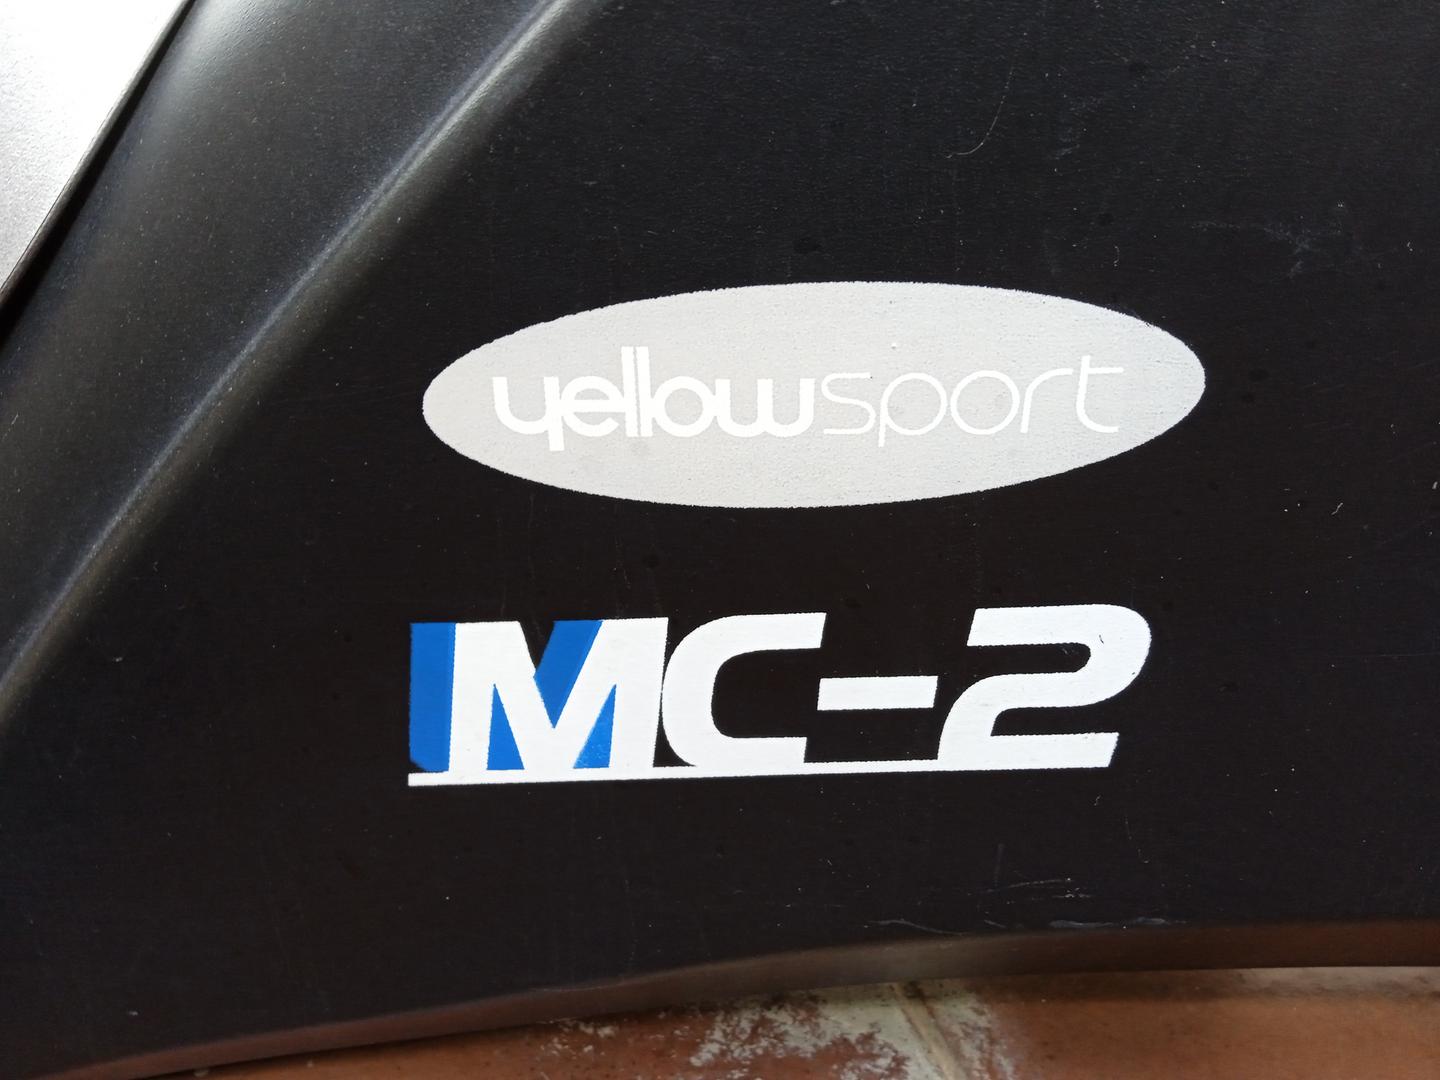 Bicicleta ergométrica Yellow sport MC-2 em Aço Cinza 130 cm x 52 cm x 110 cm